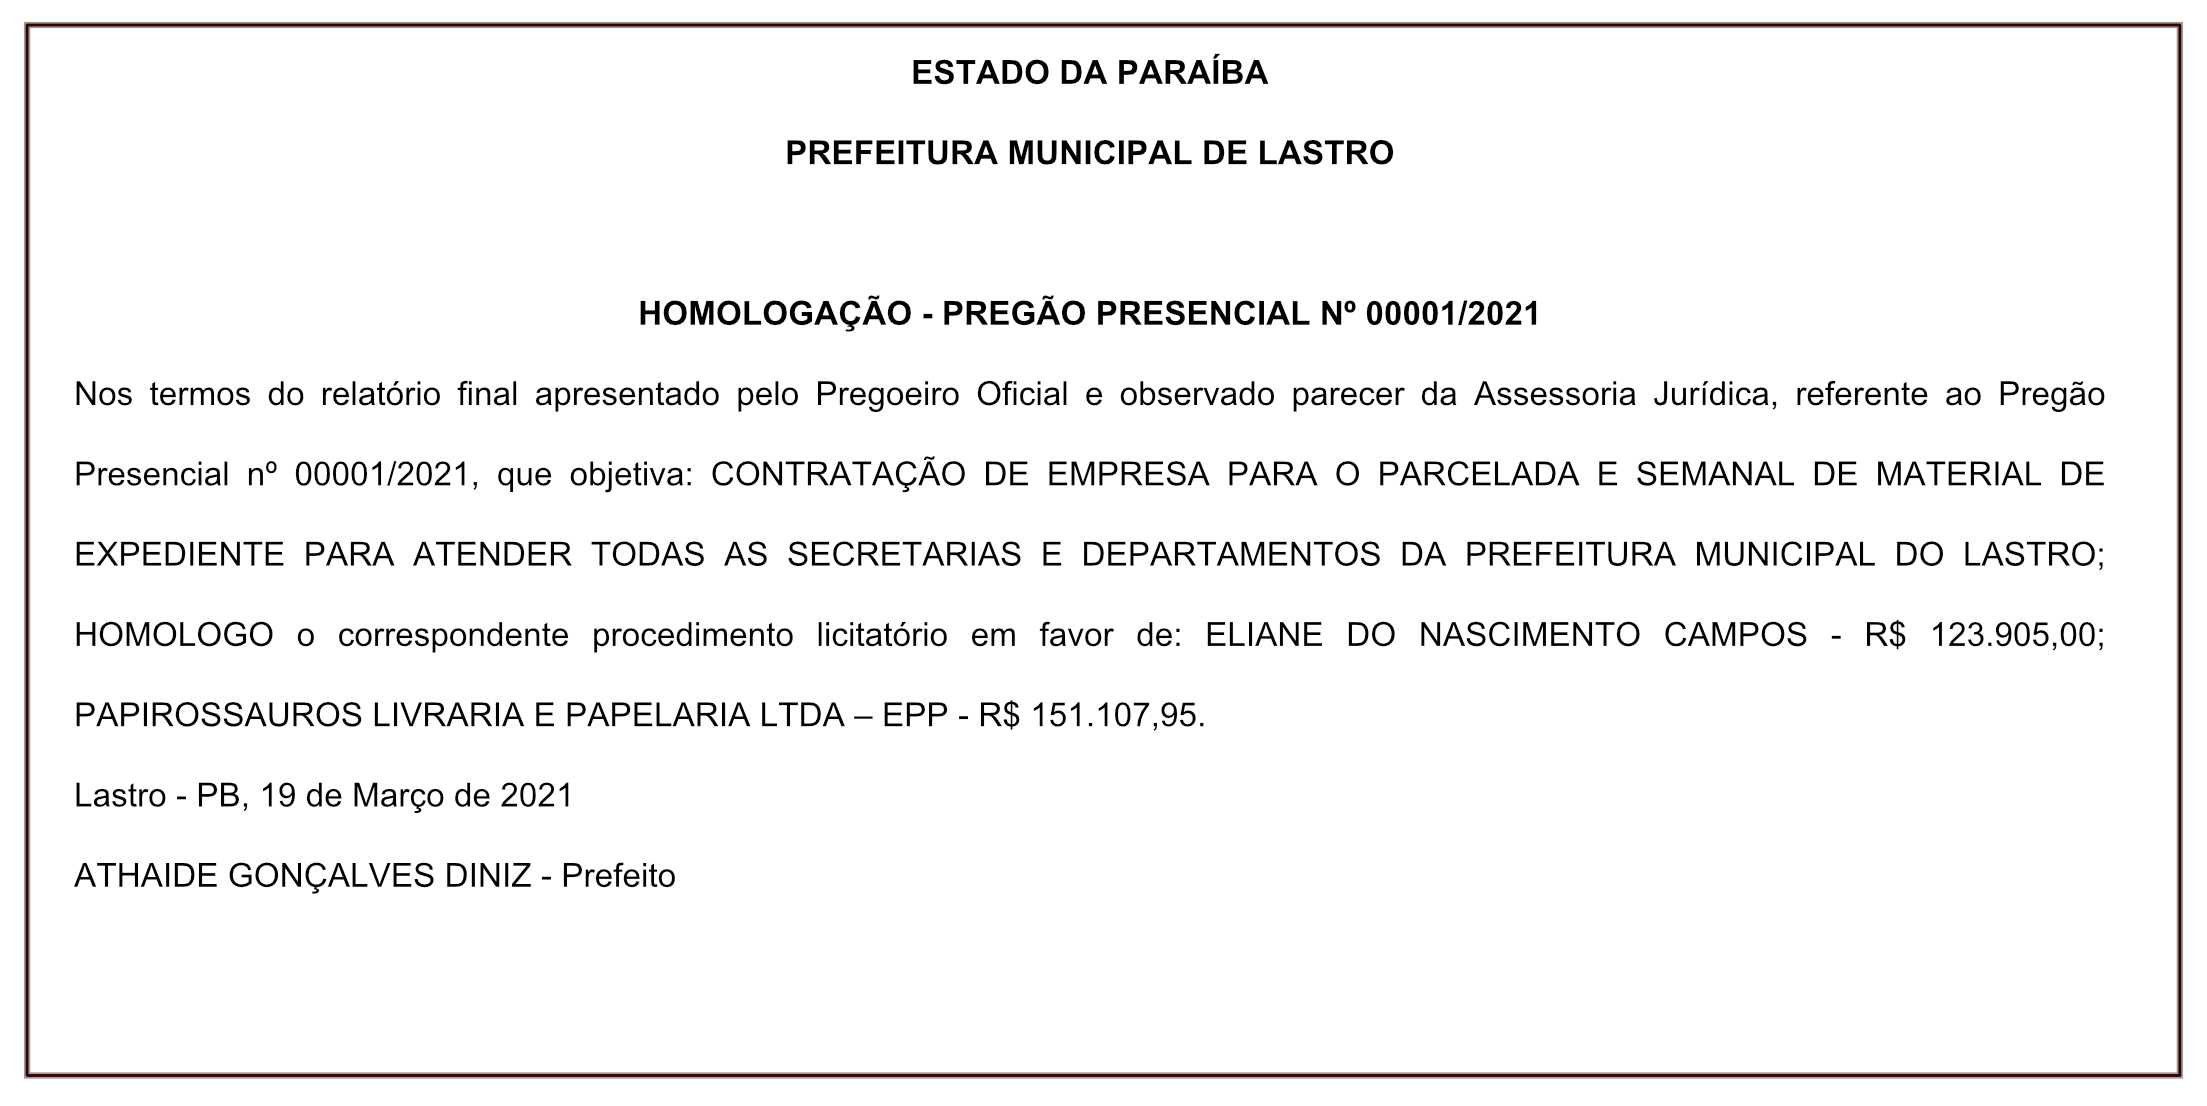 PREFEITURA MUNICIPAL DE LASTRO – HOMOLOGAÇÃO – PREGÃO PRESENCIAL Nº 00001/2021